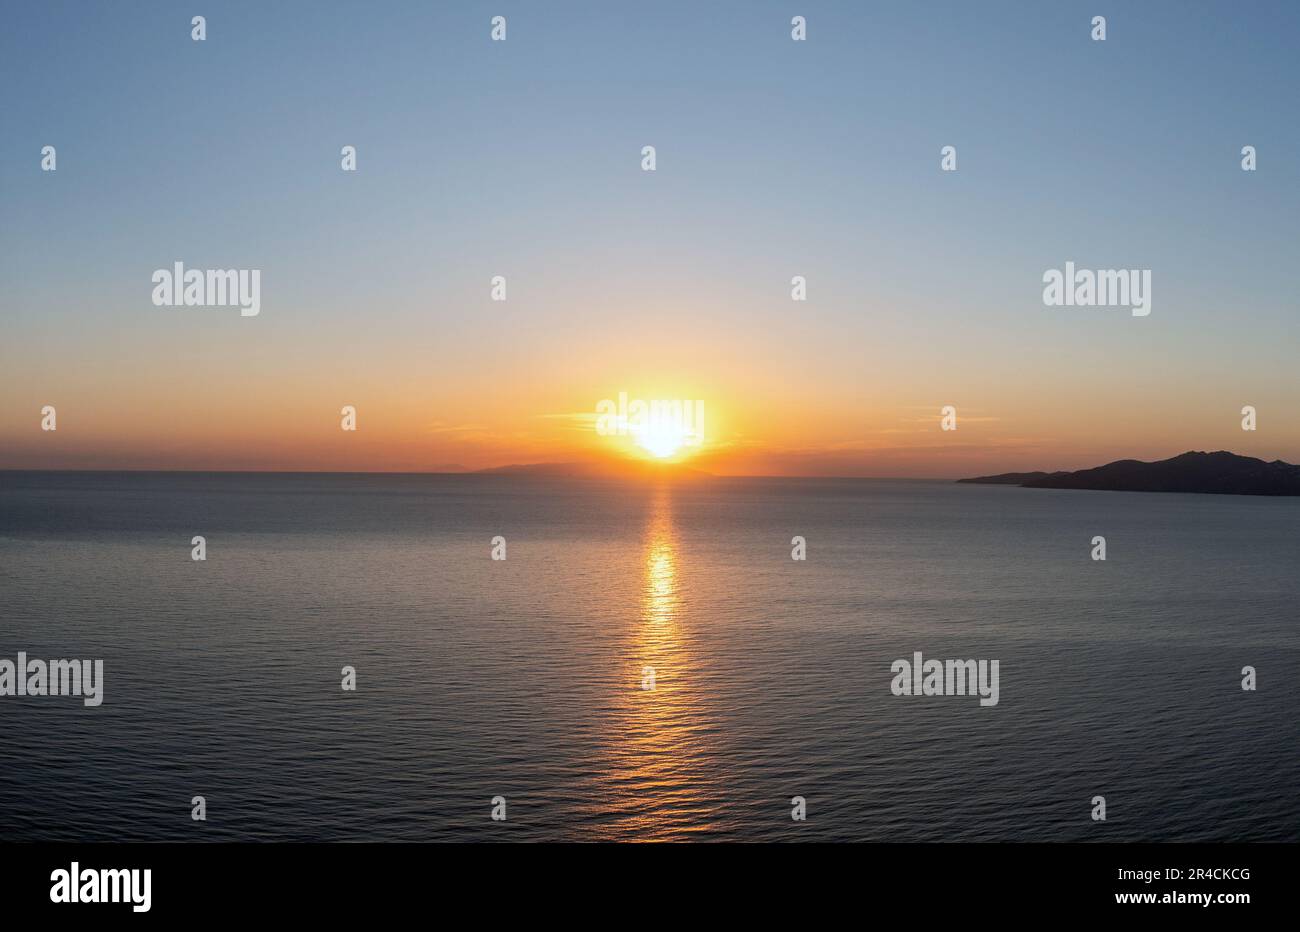 Coucher de soleil sur l'île grecque, Cyclades, Grèce. Le soleil doré se cache derrière la colline au coucher du soleil et colore l'or vaste mer bleu Egée calme. Banque D'Images